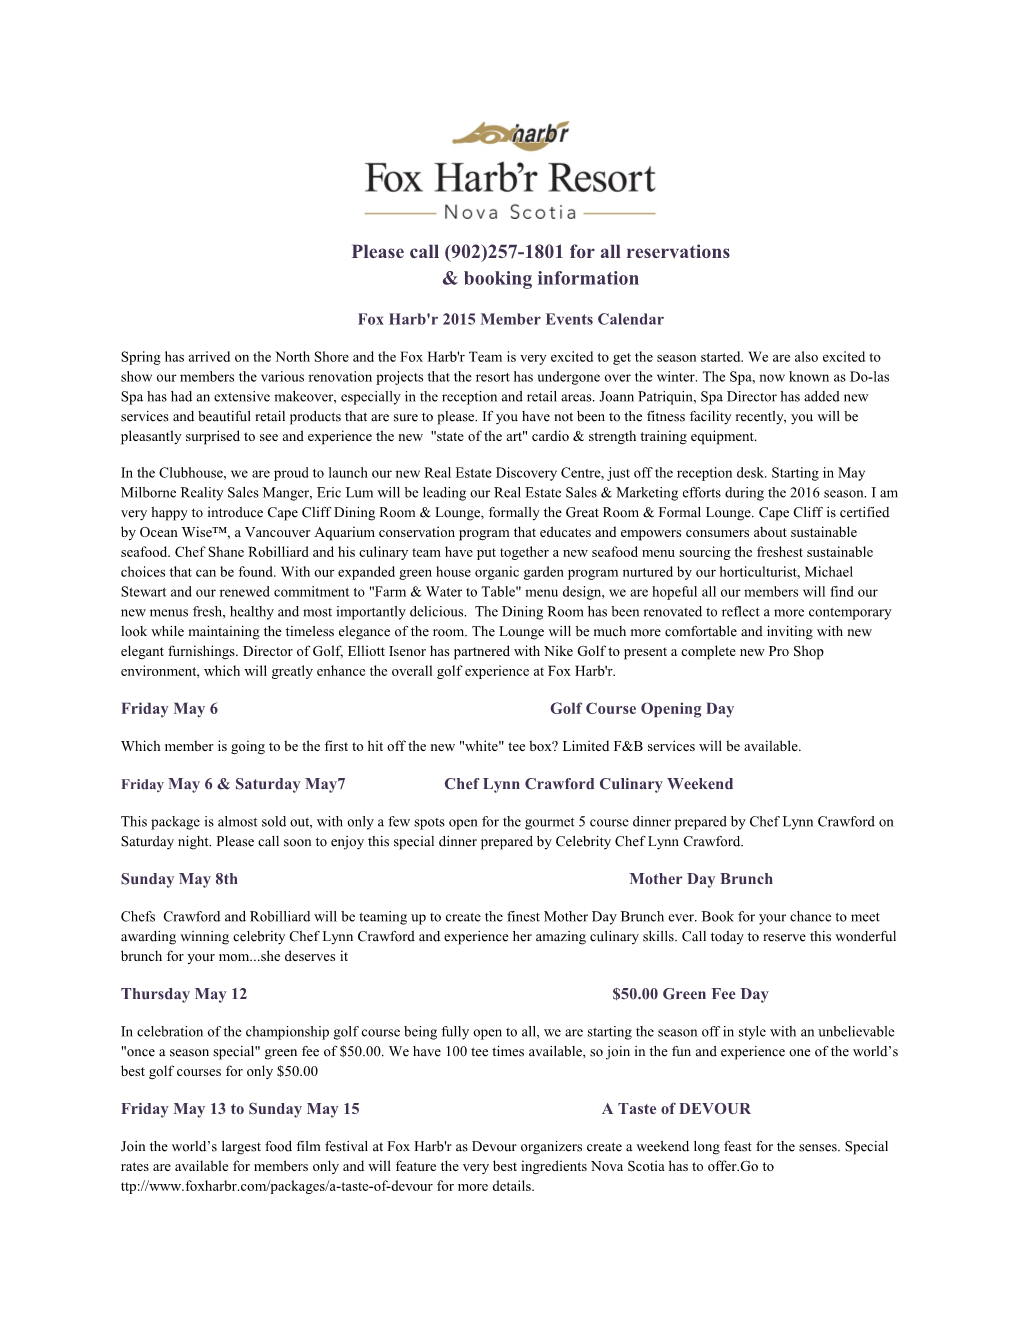 Fox Harb'r 2015 Member Events Calendar